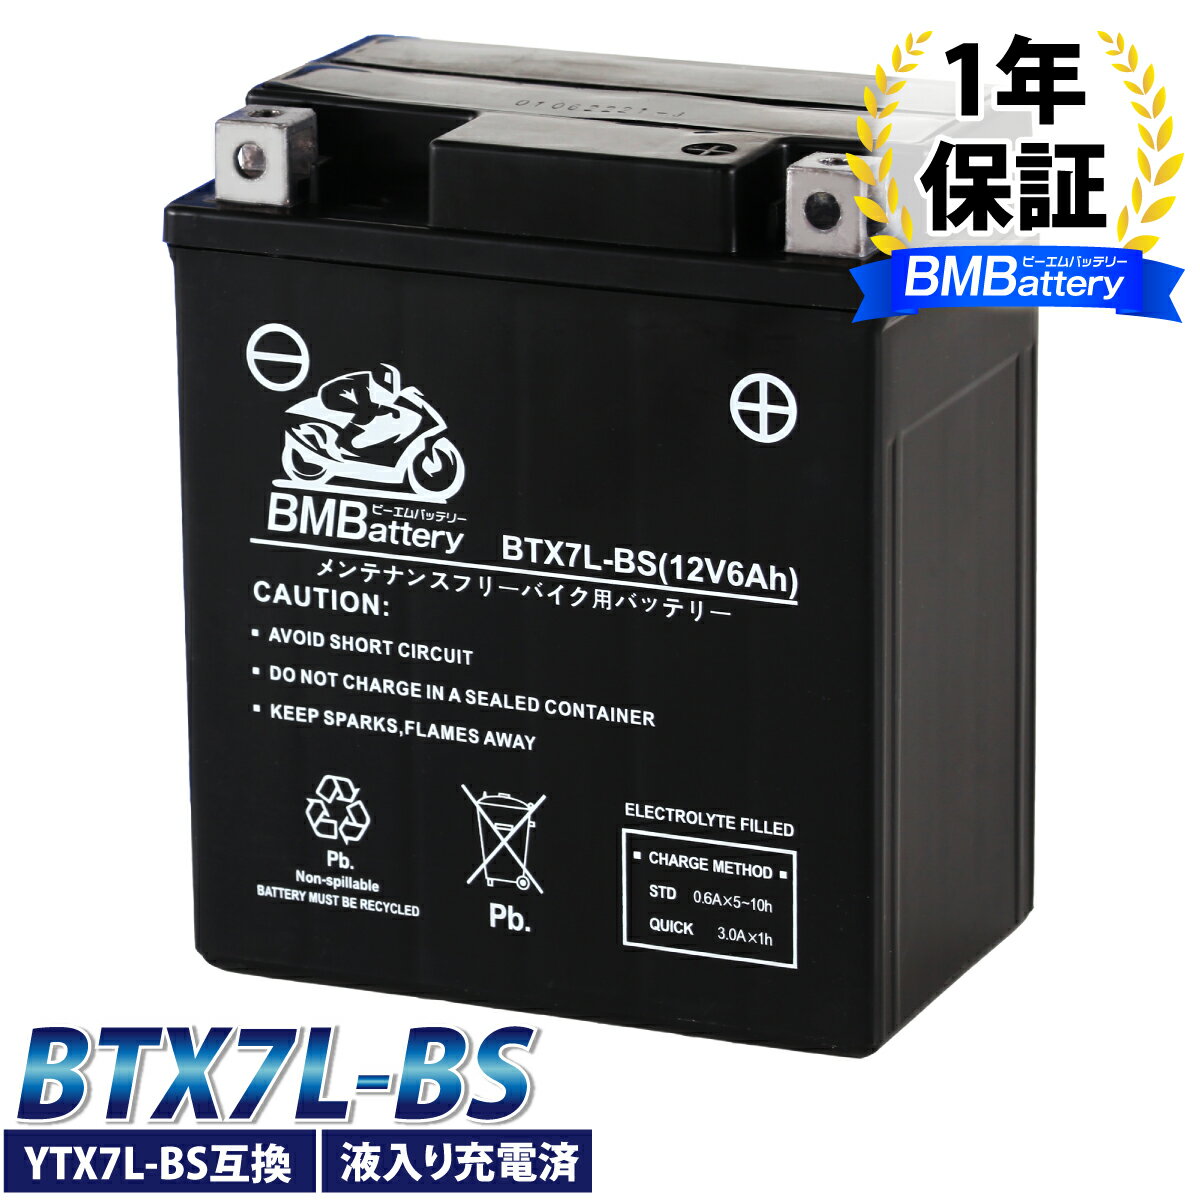 バイク バッテリー YTX7L-BS 互換BMBattery 充電・液注入済み(YTX7L-BS/GTX7L-BS/FTX7L-BS/KTX7L-BS/CTX7L-BS/DTX7L-BS) 1年保証 ホーネット CBR250 ナイトホーク グラストラッカー Vストローム バリオス